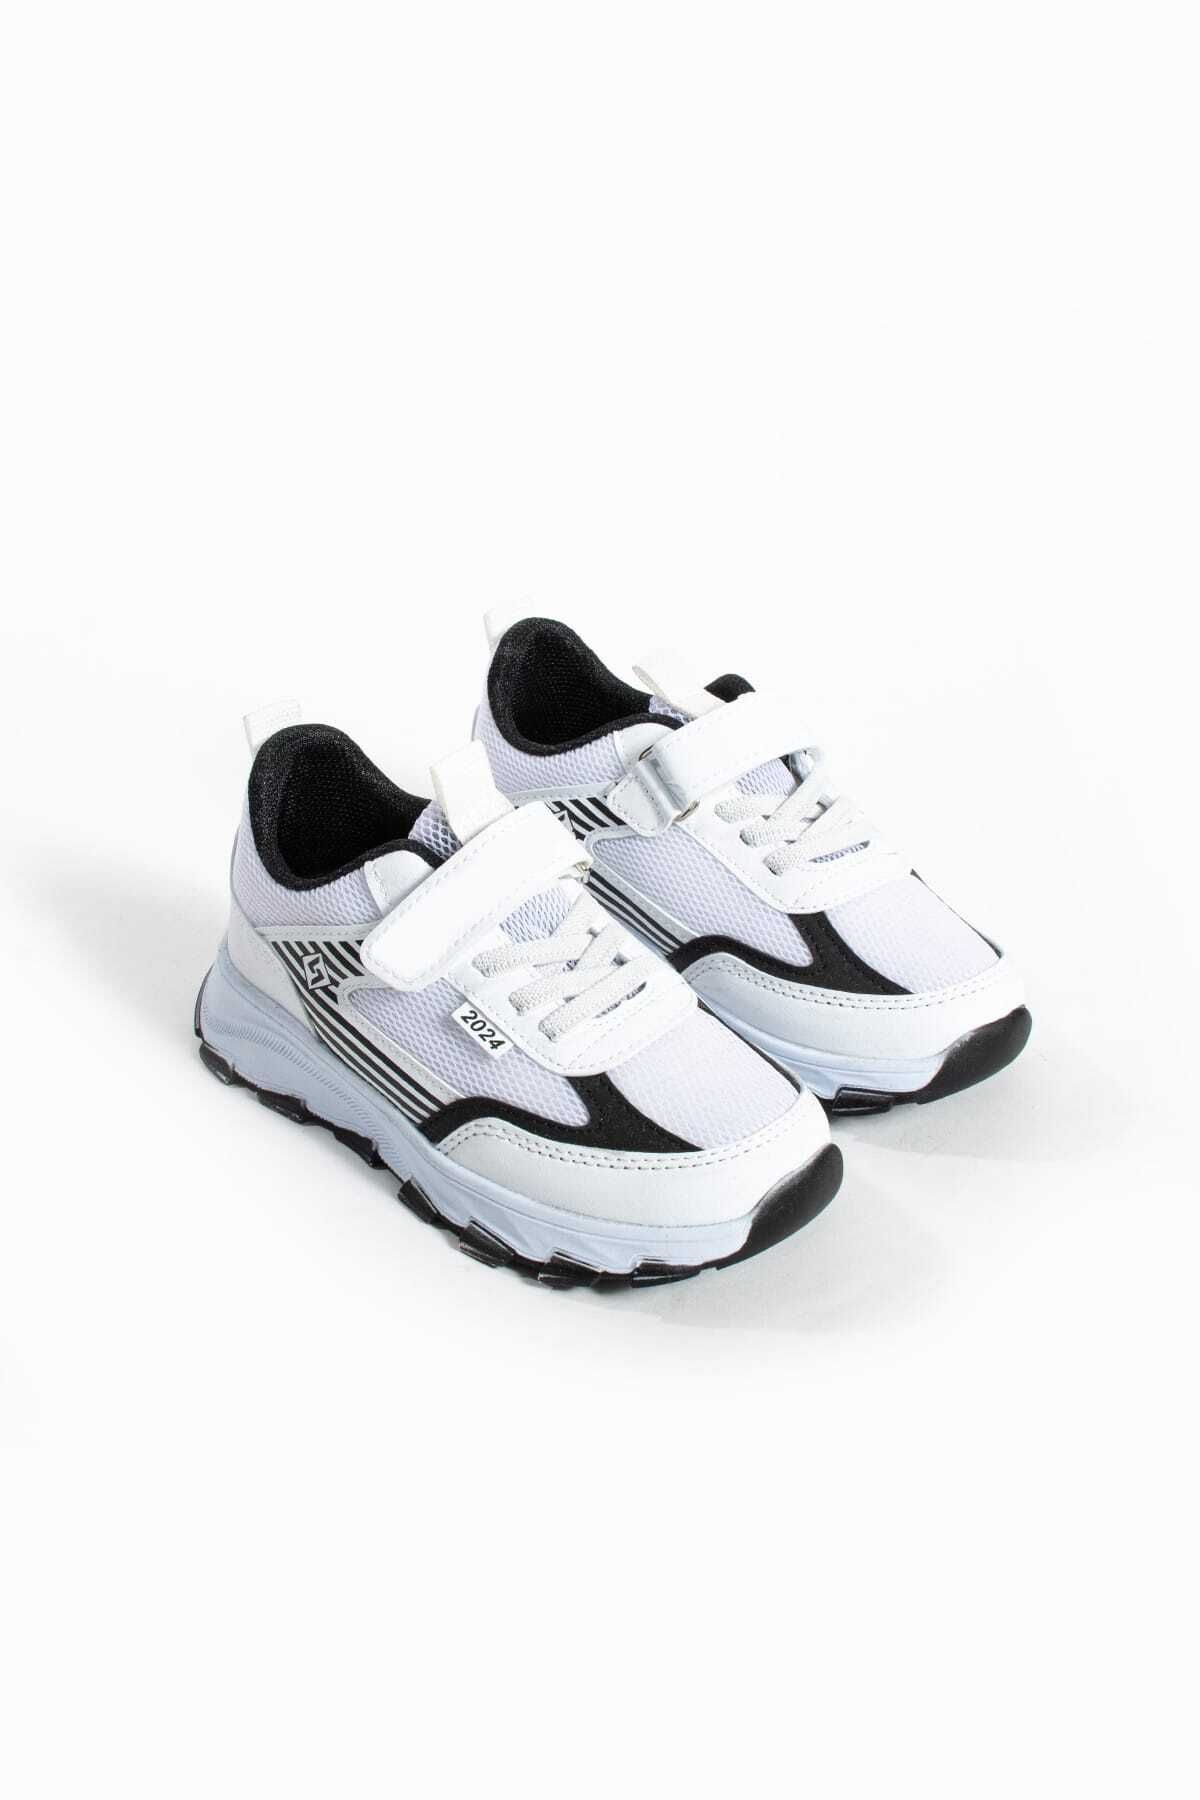 GAK RUN Unisex Çocuk Cırtlı  lastikli Rahat Günlük Sneaker anorak  Spor Ayakkabı hafif poli taban